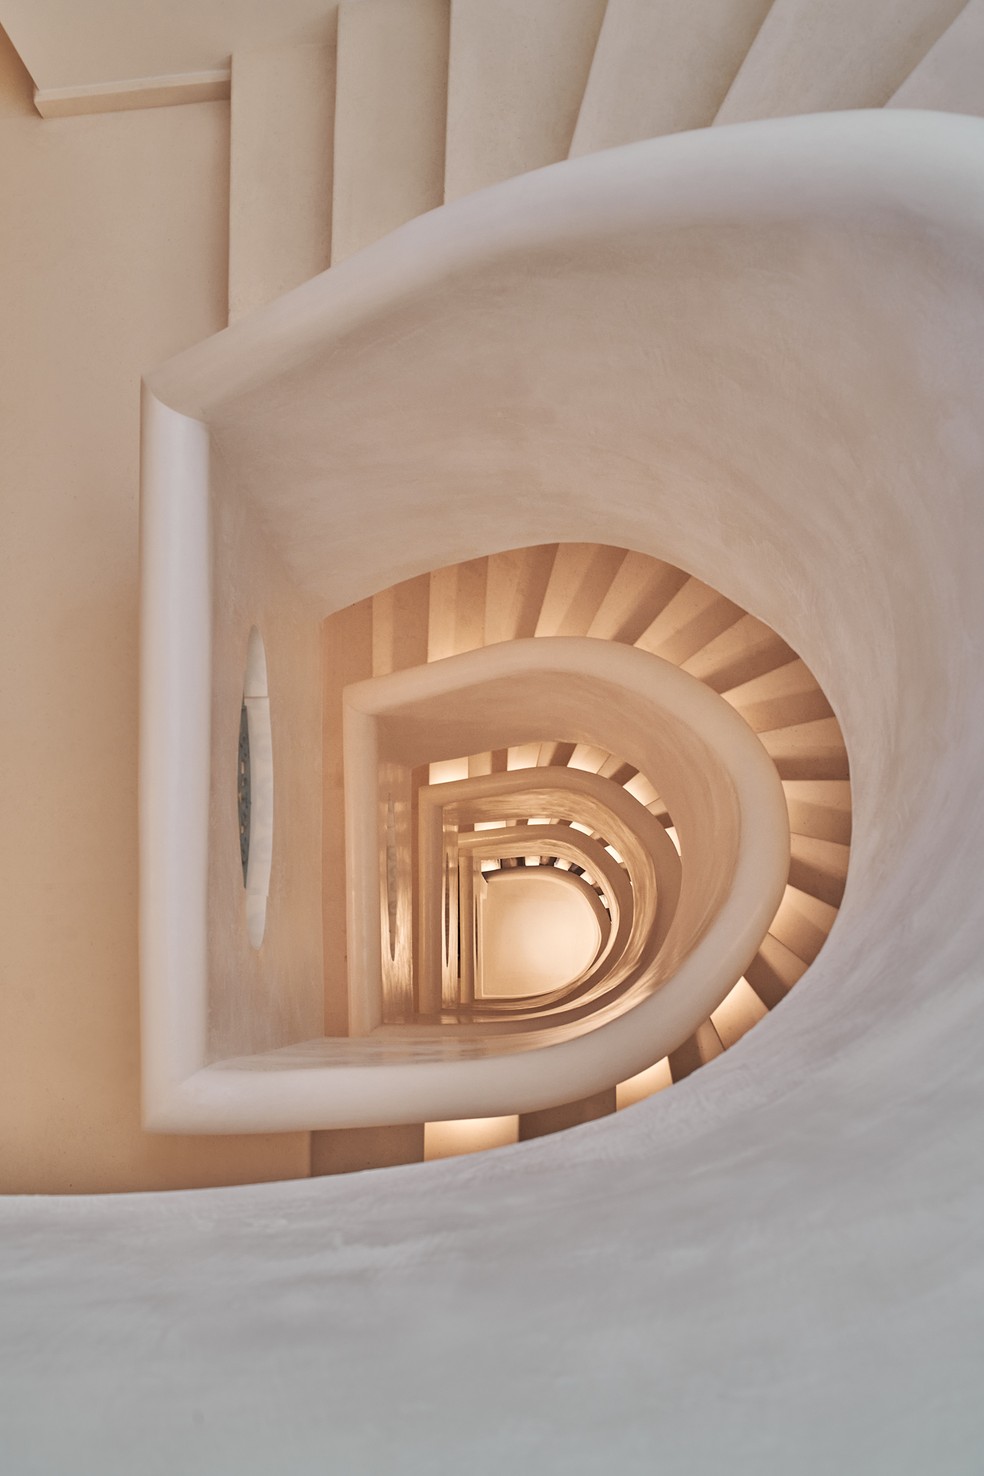 Vista da escadaria do hotel — Foto: Giulio Ghiardi